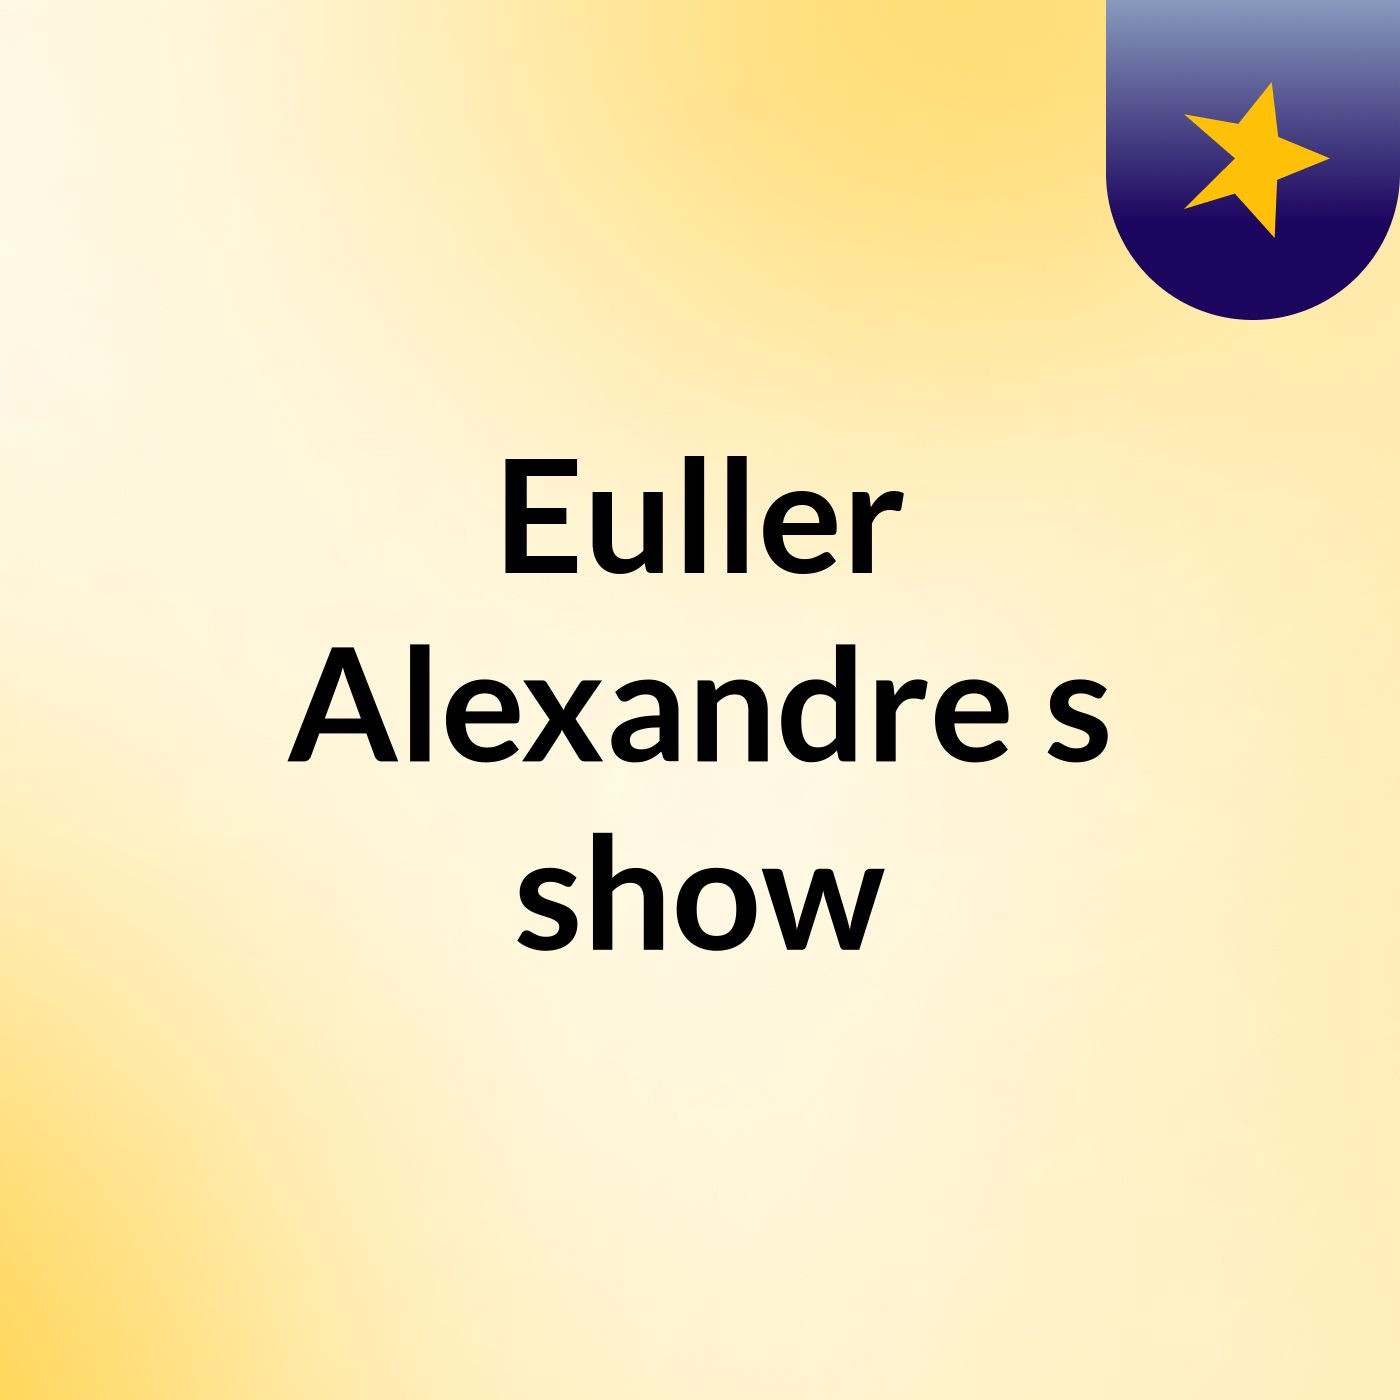 Euller Alexandre's show